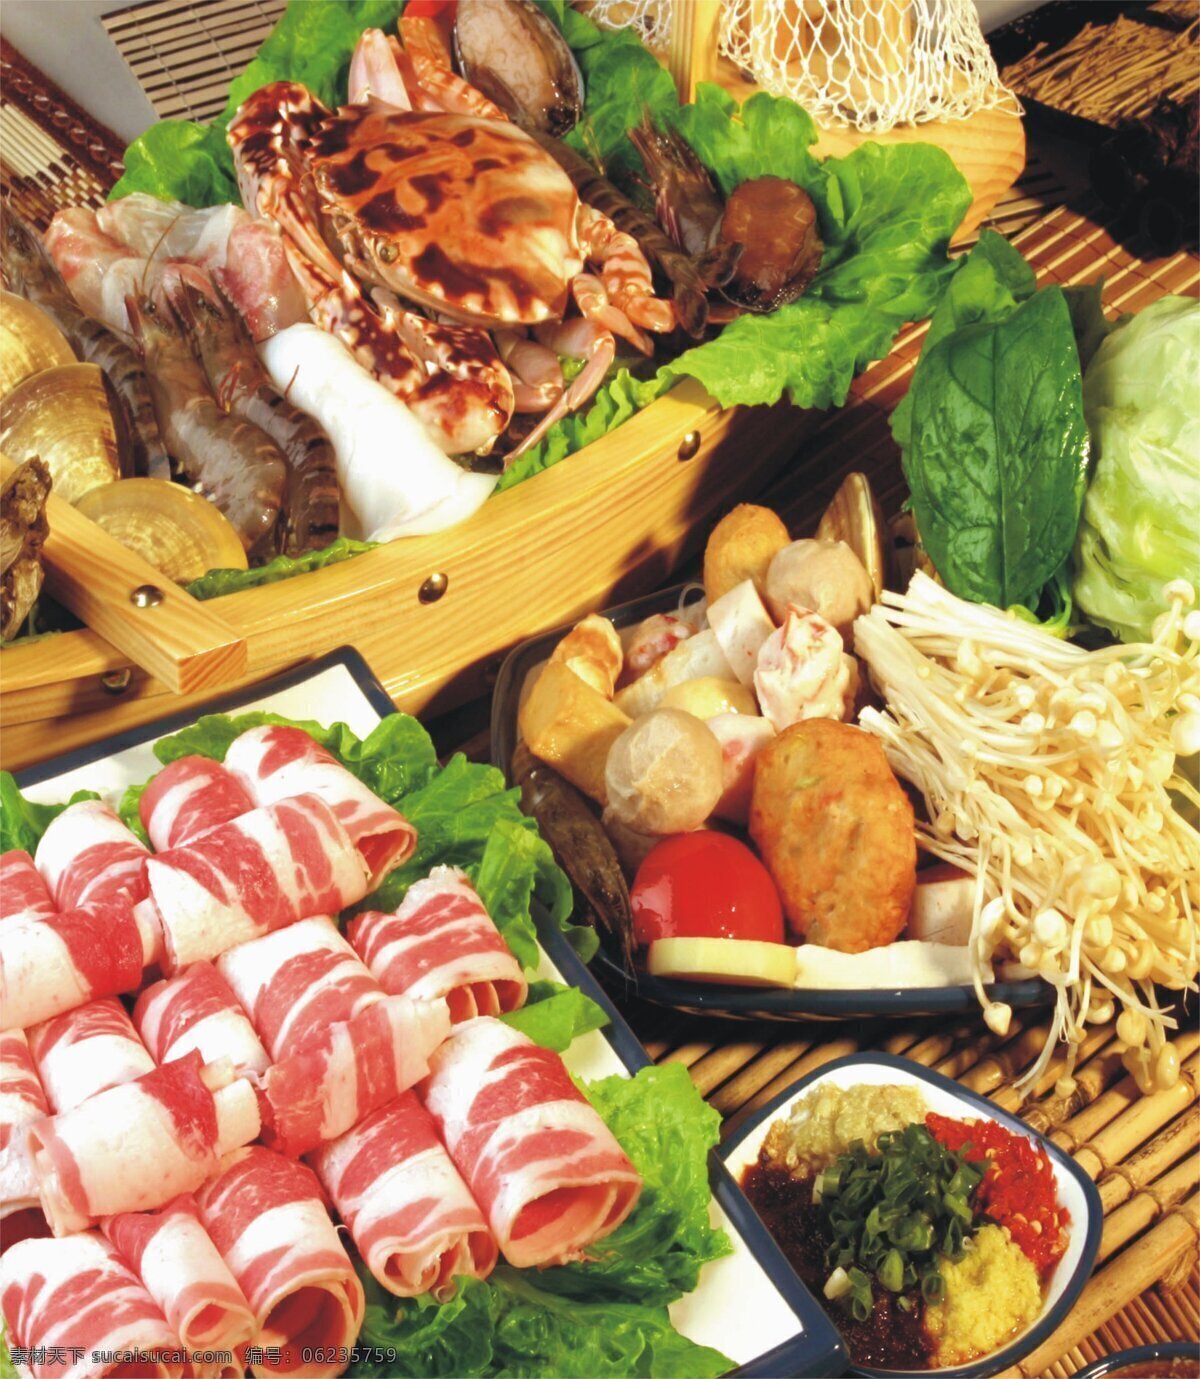 日式 涮火锅 生食料 涮牛肉片 河鲜 海鲜 菌菇类 各种蔬菜 品种多样 热水烫熟 蘸料吃 涮火锅原料 食材 食物素材摄影 食物原料种种 食物原料 餐饮美食